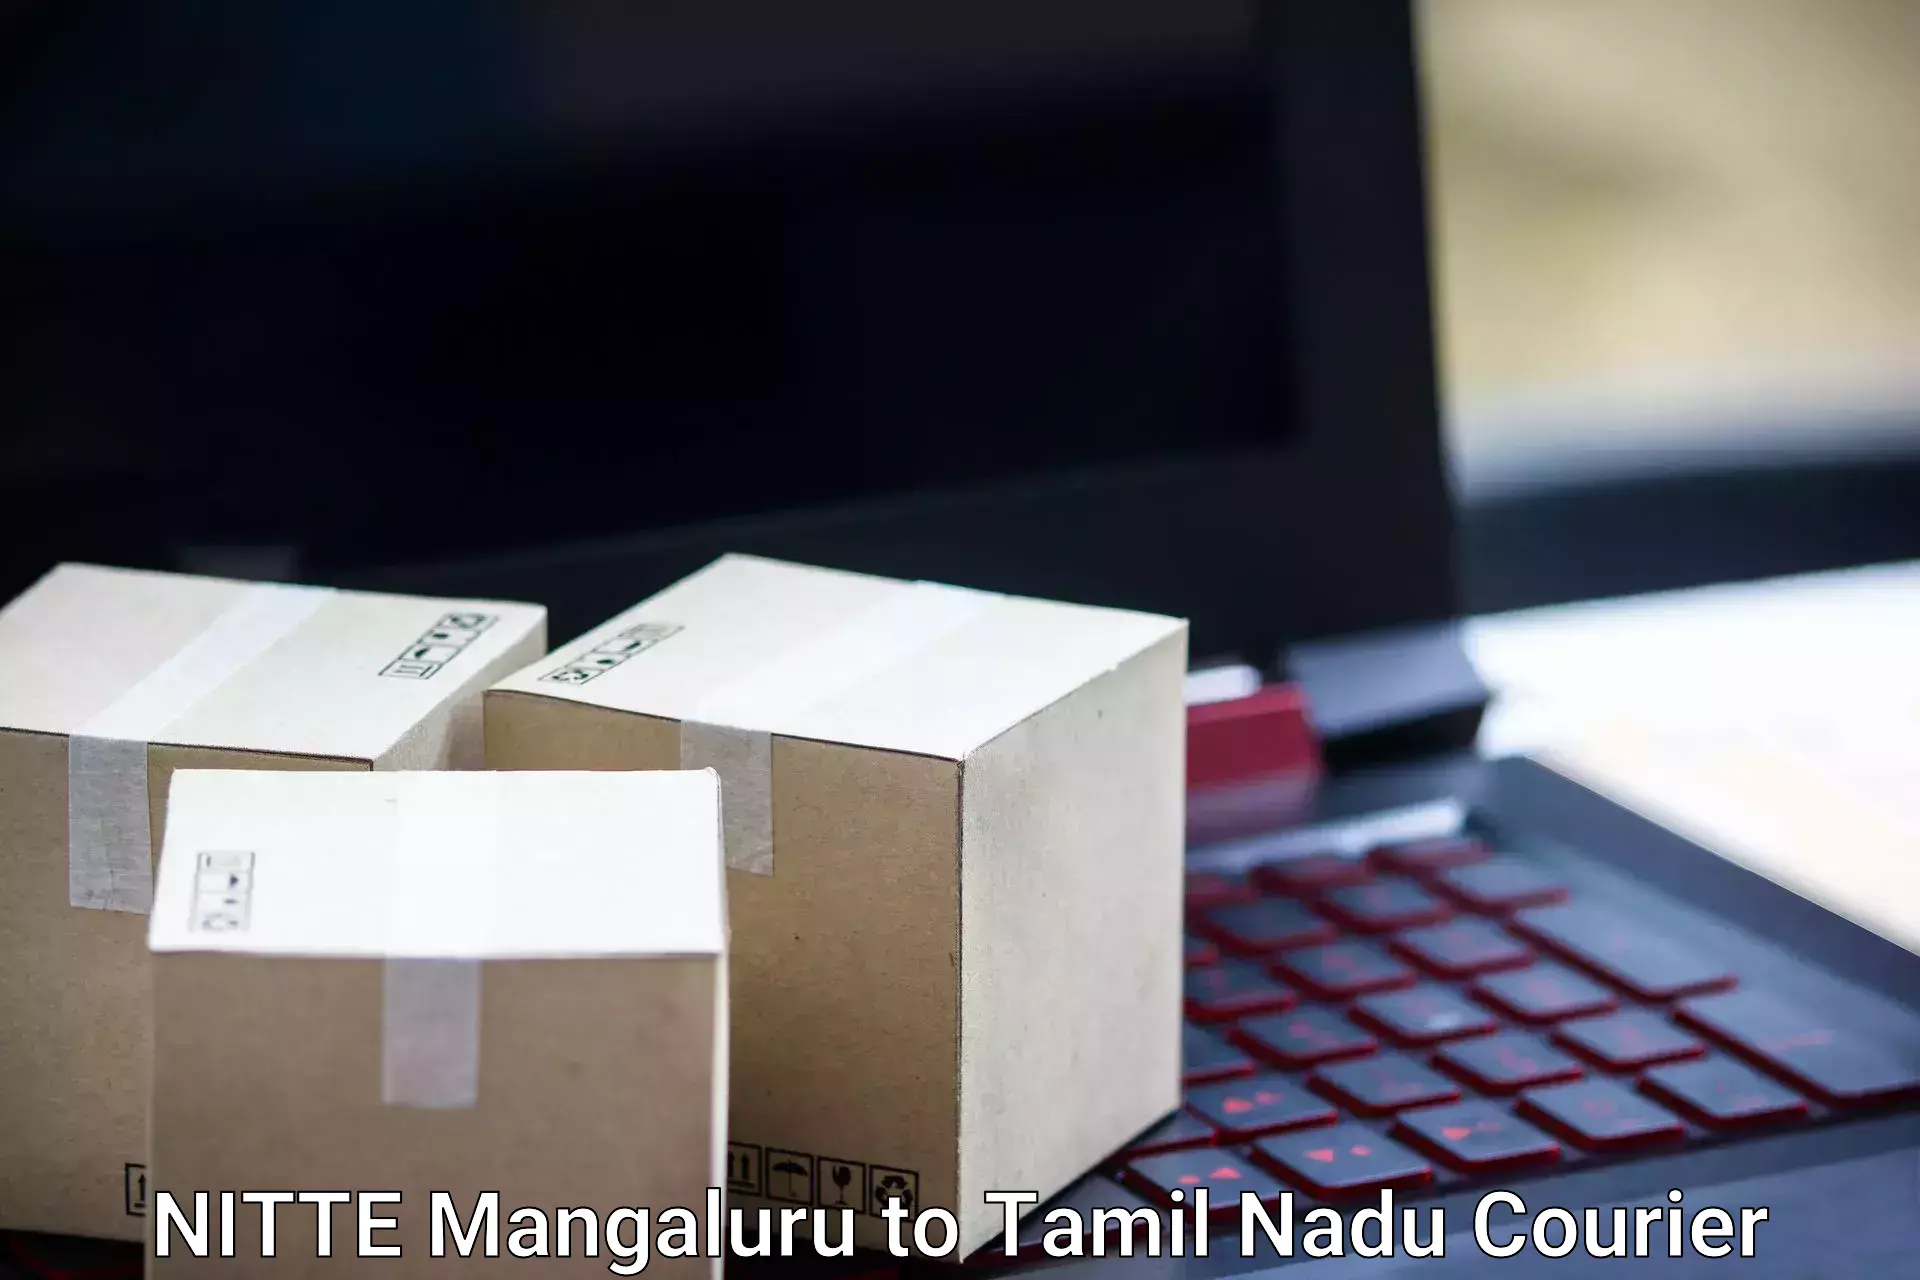 Baggage shipping experts NITTE Mangaluru to Avadi